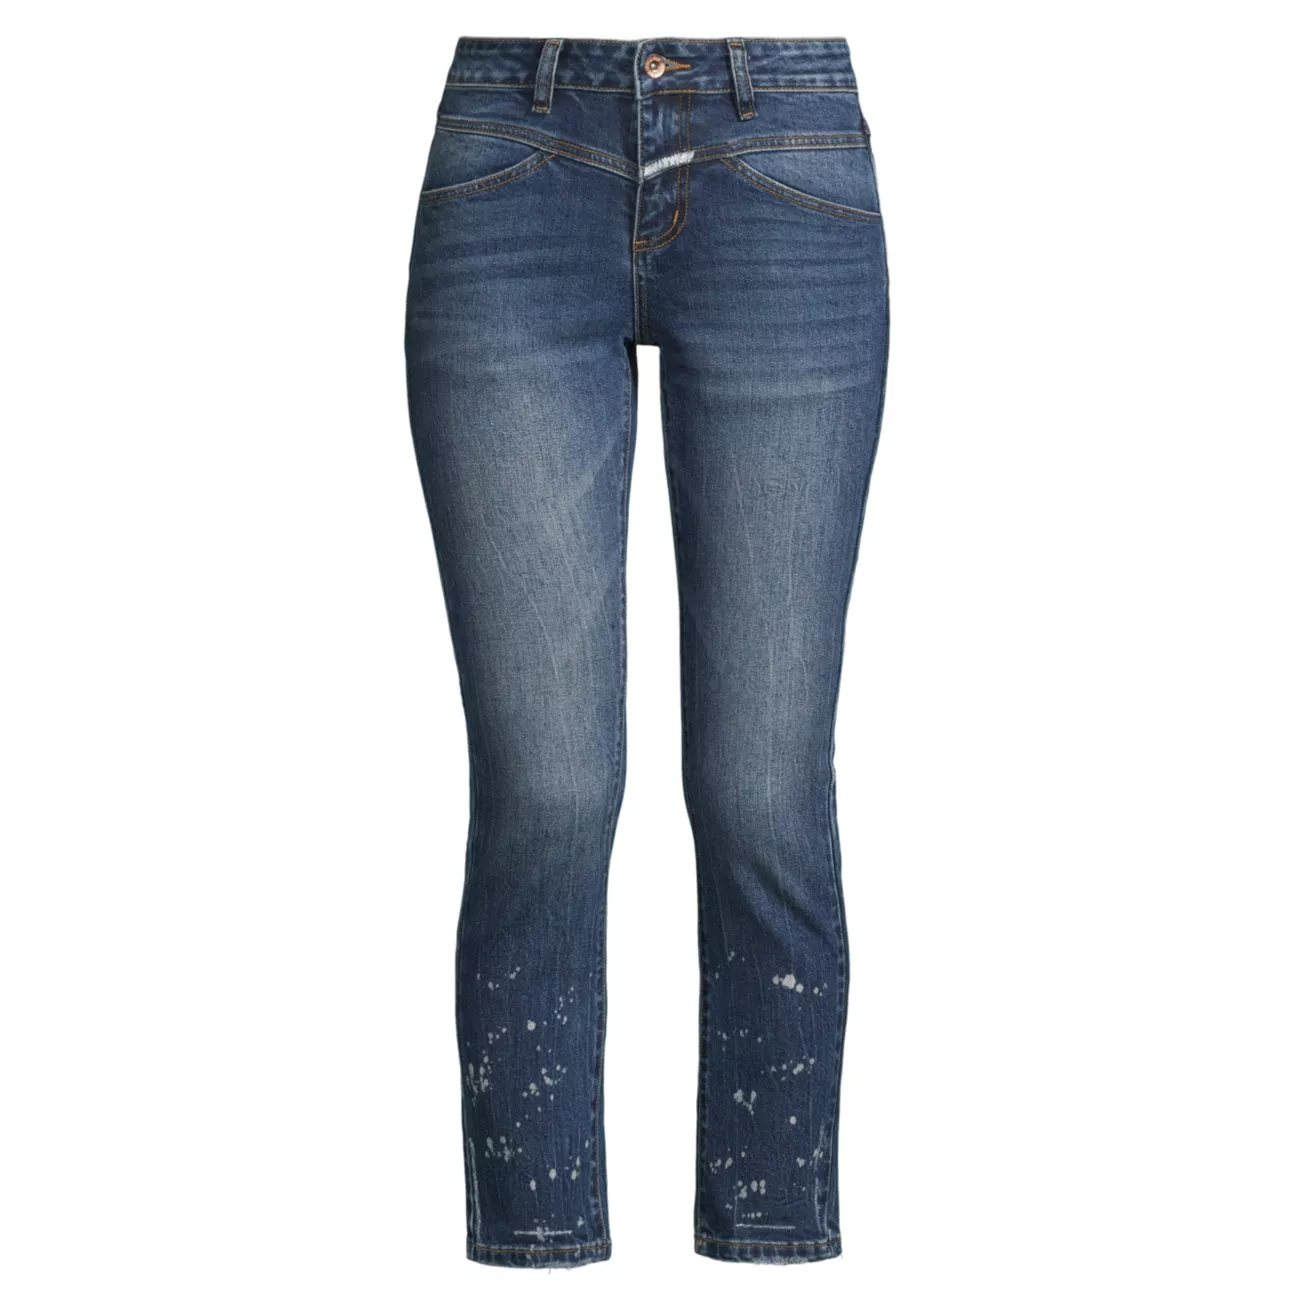 Отбеленные узкие укороченные джинсы со средней посадкой стрейч Denim Bay